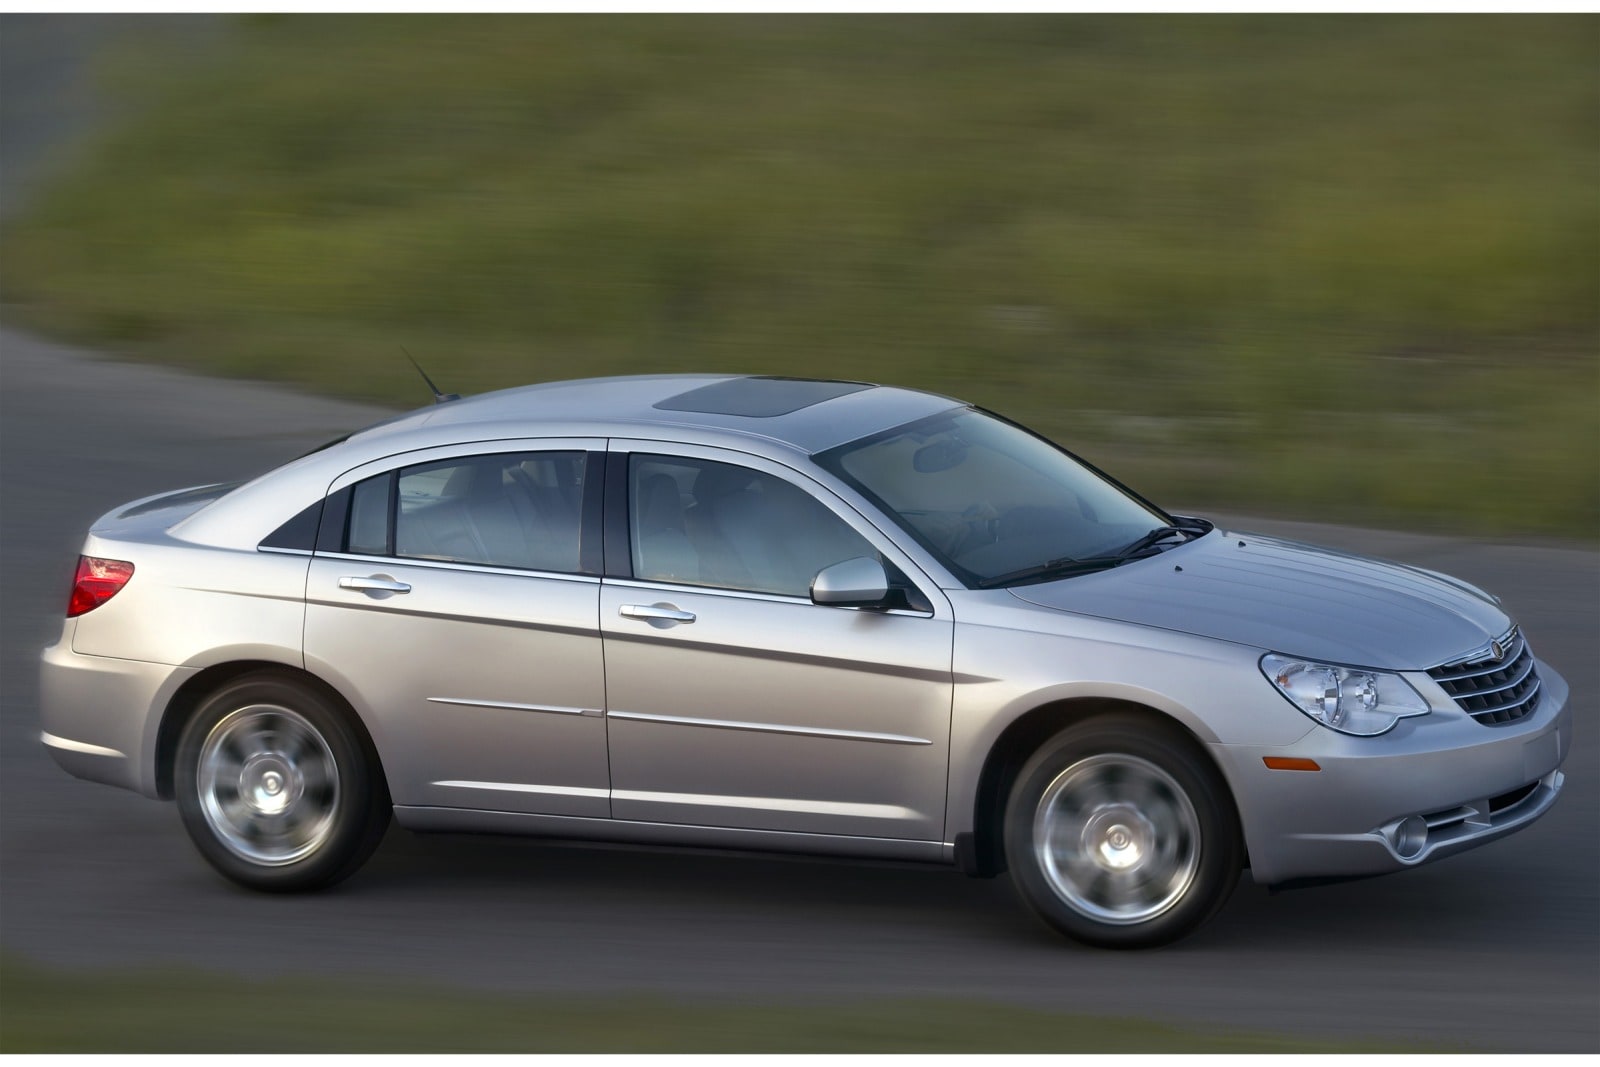 2007 Chrysler Sebring Review & Ratings | Edmunds